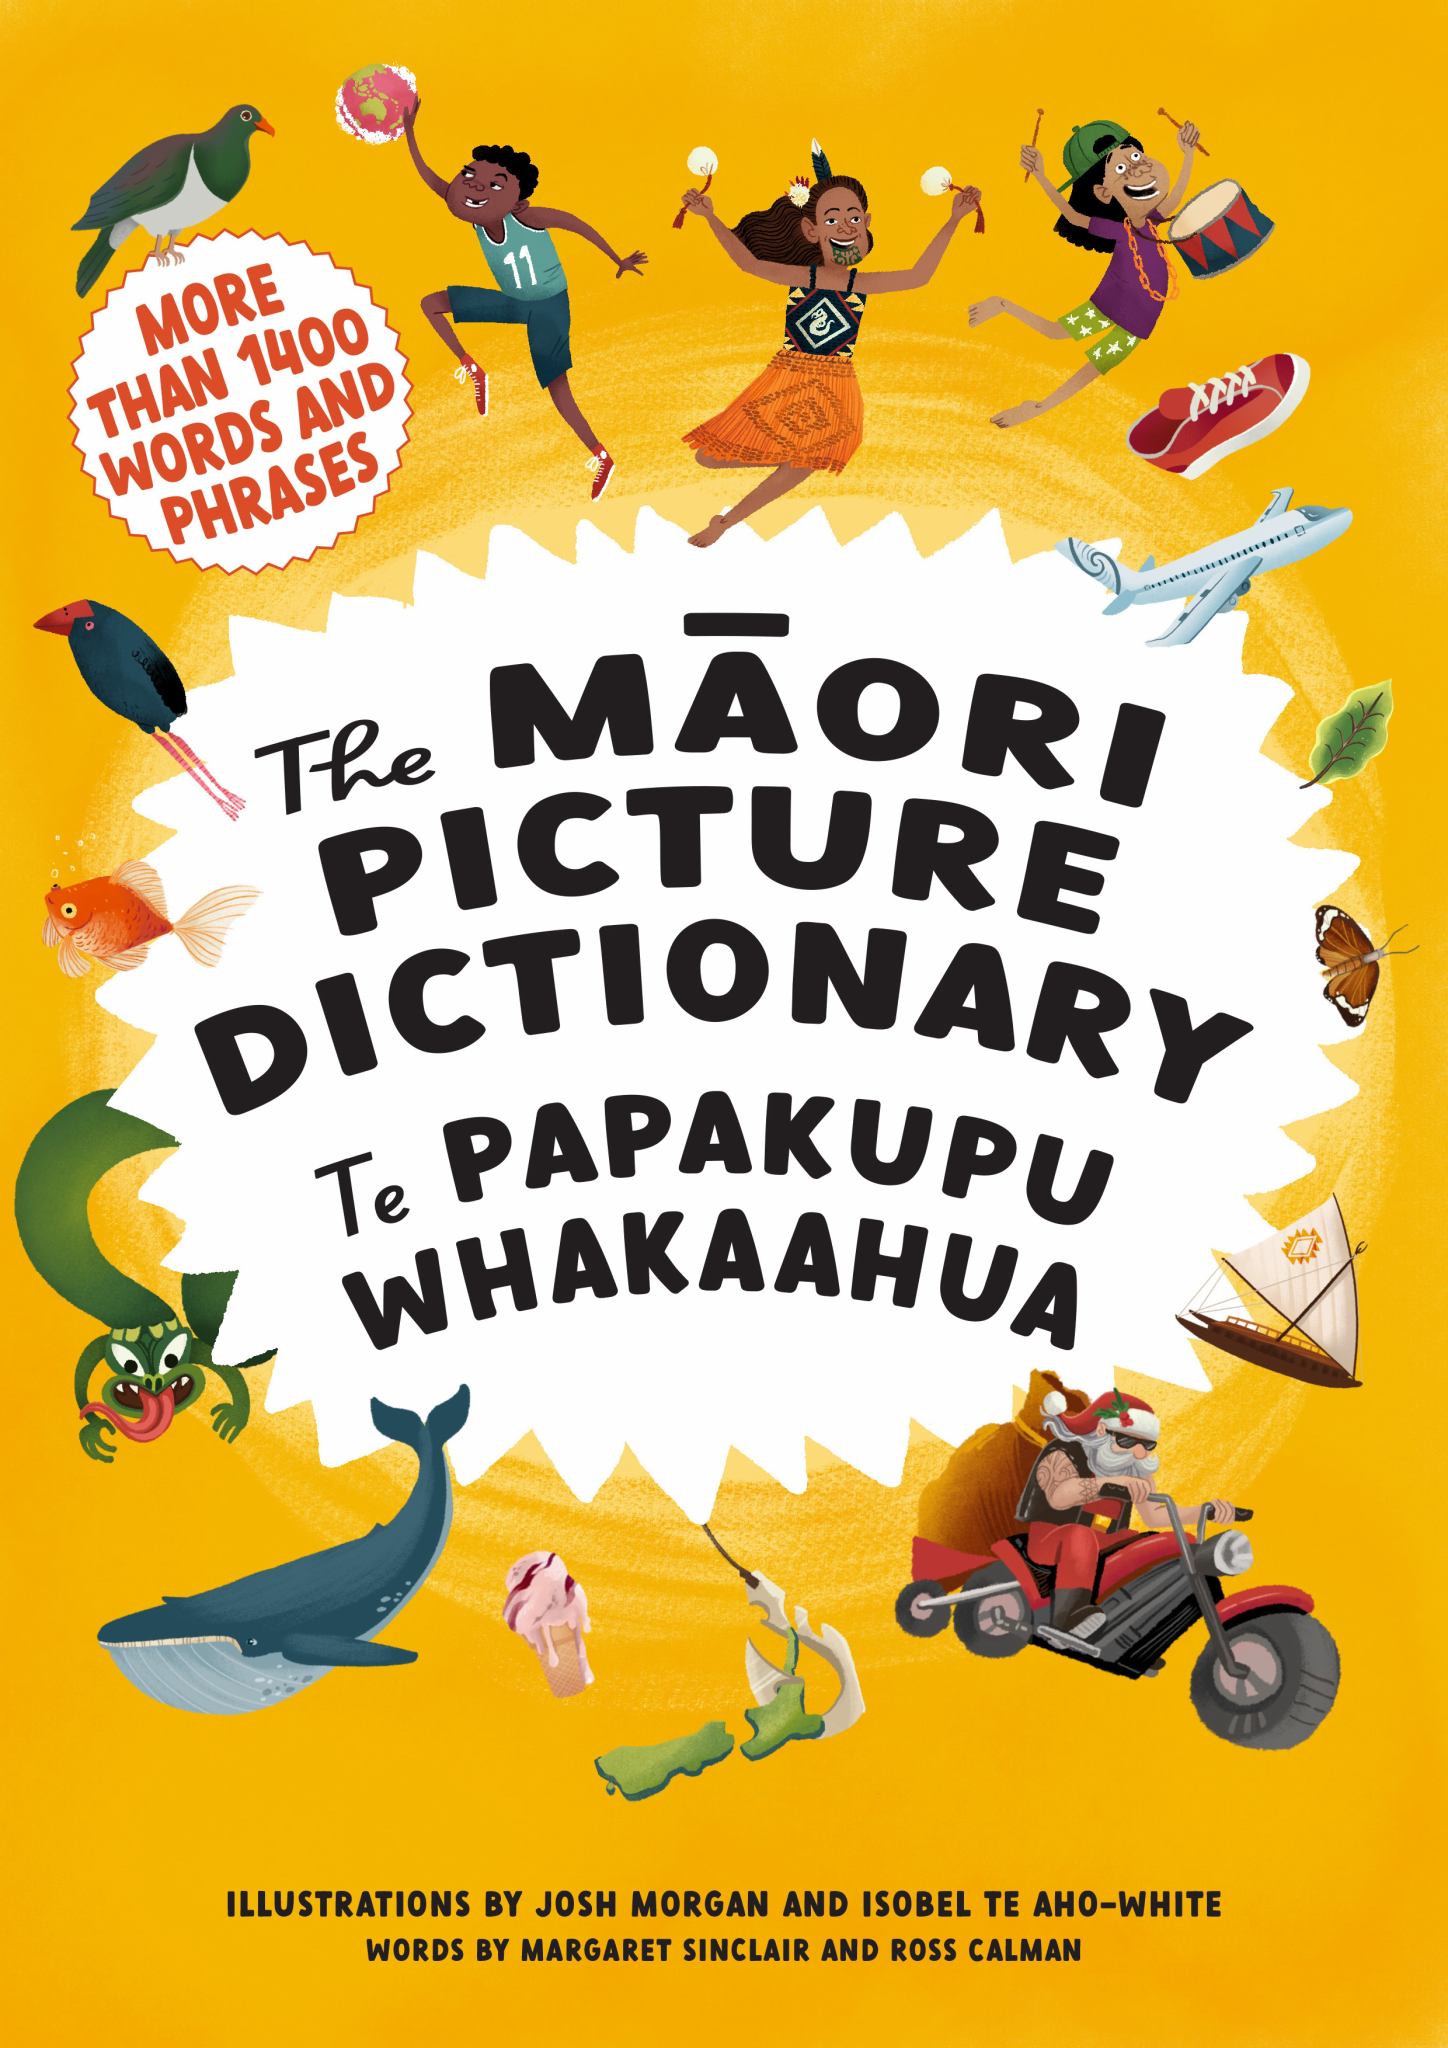 Maori Picture Dictionary: Te Papakupu Whakaahua